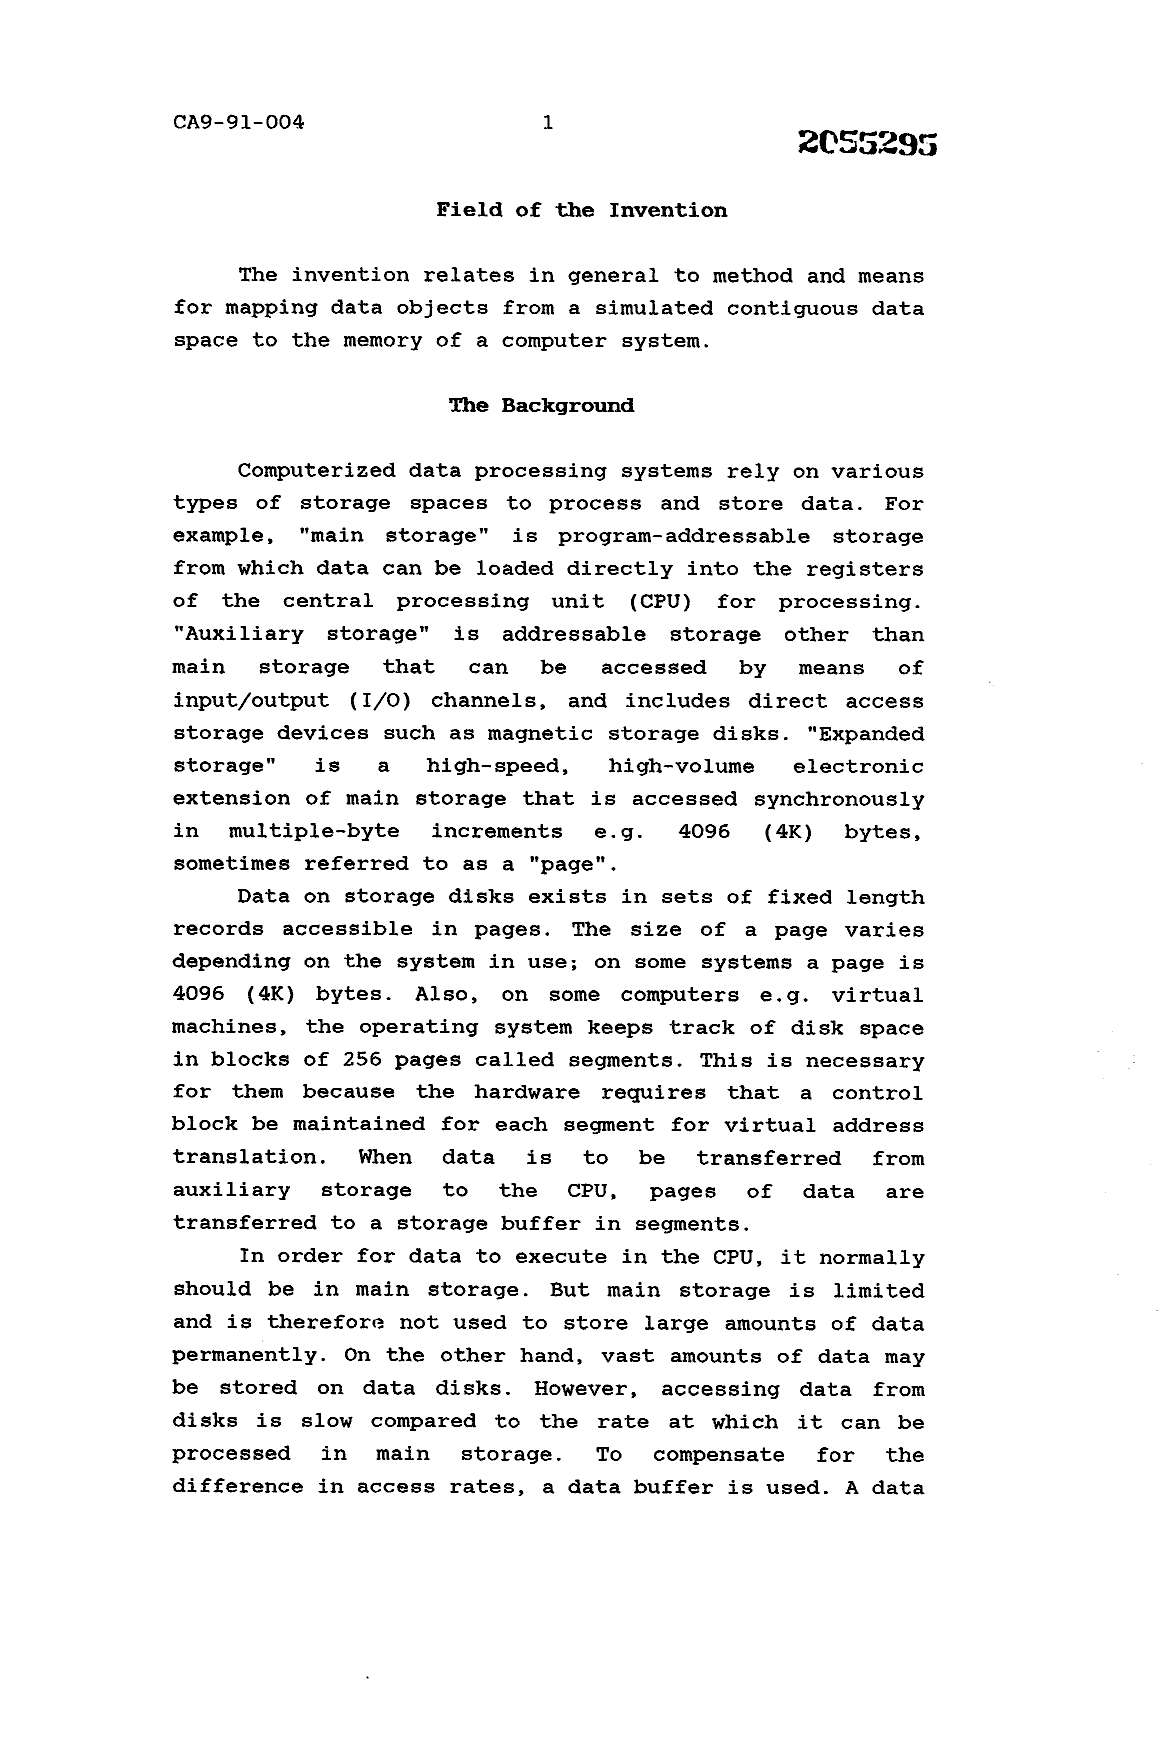 Canadian Patent Document 2055295. Description 19940327. Image 1 of 20